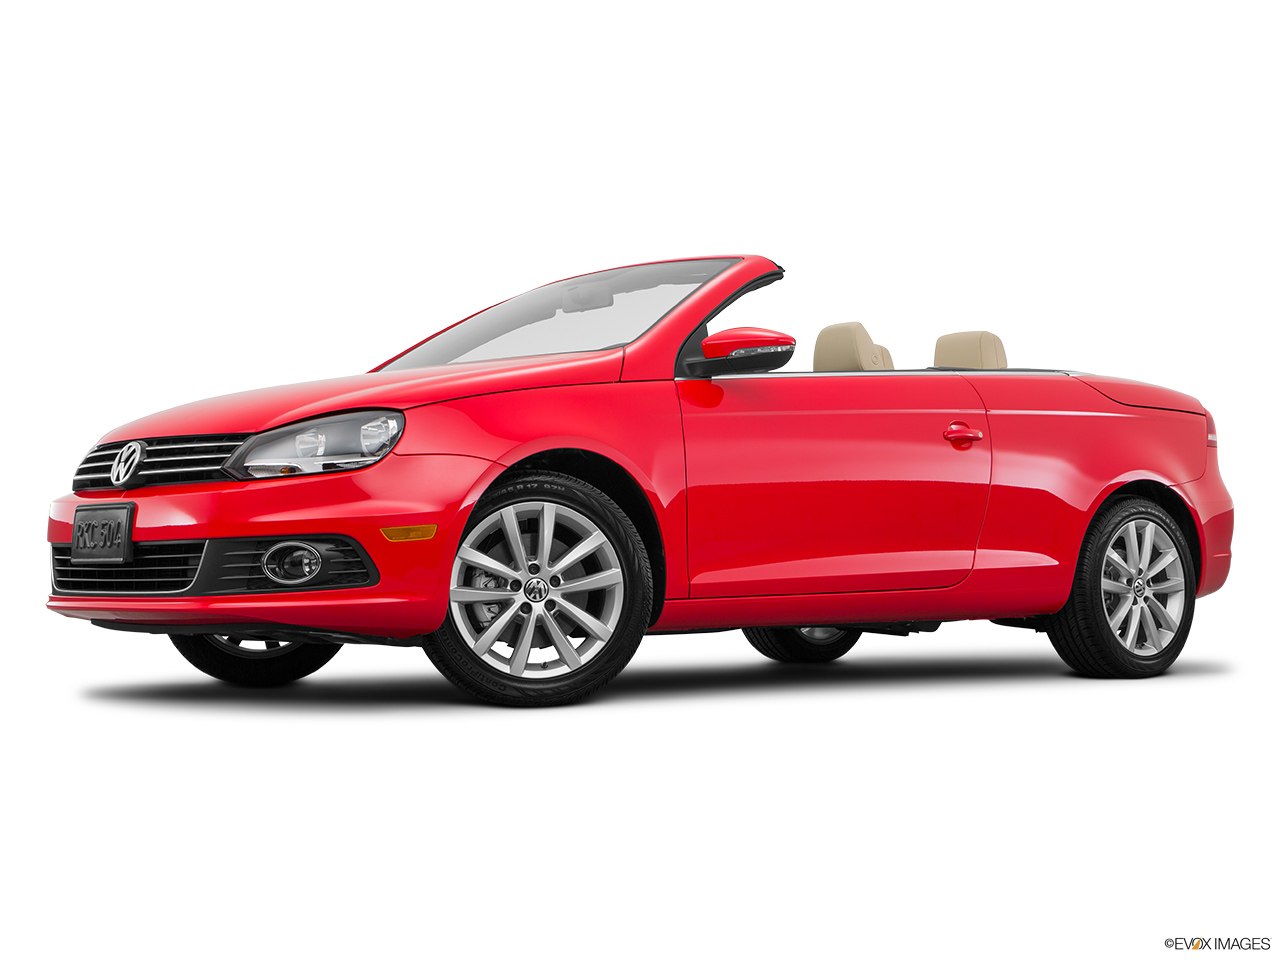 2016 Volkswagen Eos Komfort Edition Low/wide front 5/8. 